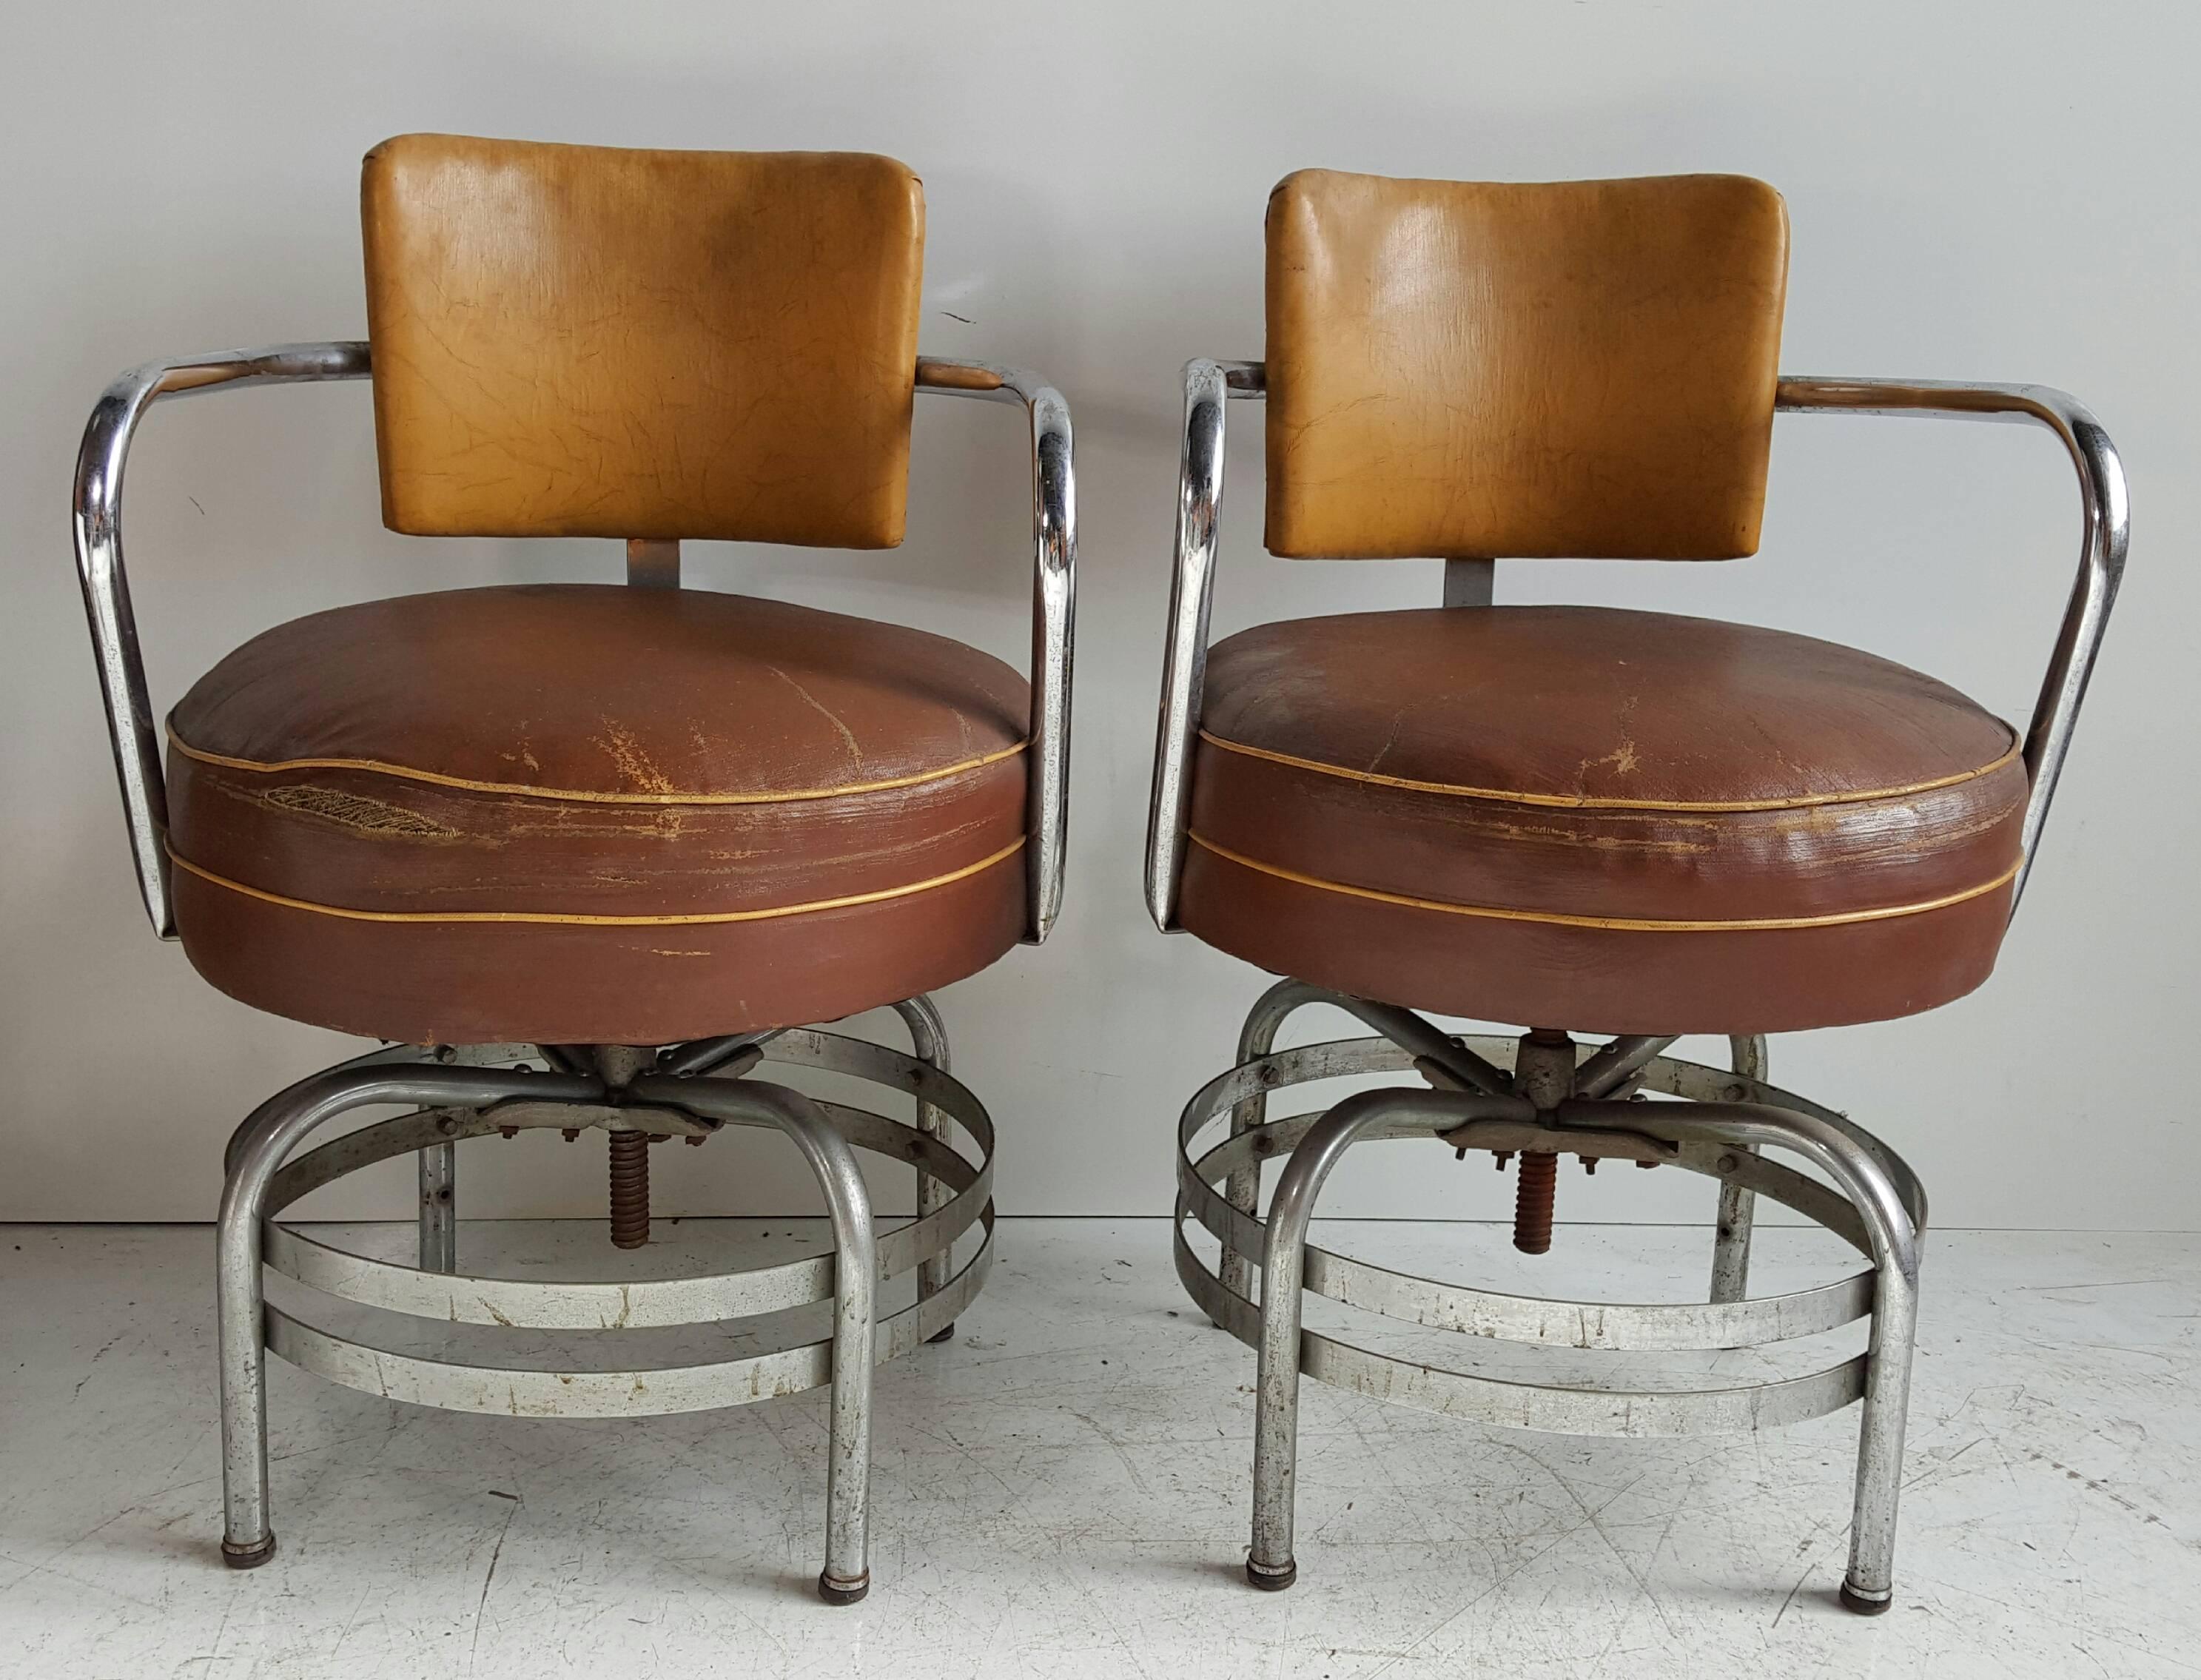 Classic 1930s American Art Deco / Machine Age fauteuils pivotants en chrome tubulaire, forme étonnante, patine, tous d'origine, conserver les sièges ronds en toile cirée d'origine, s'intégrer parfaitement dans la déco, moderne, contemporain,